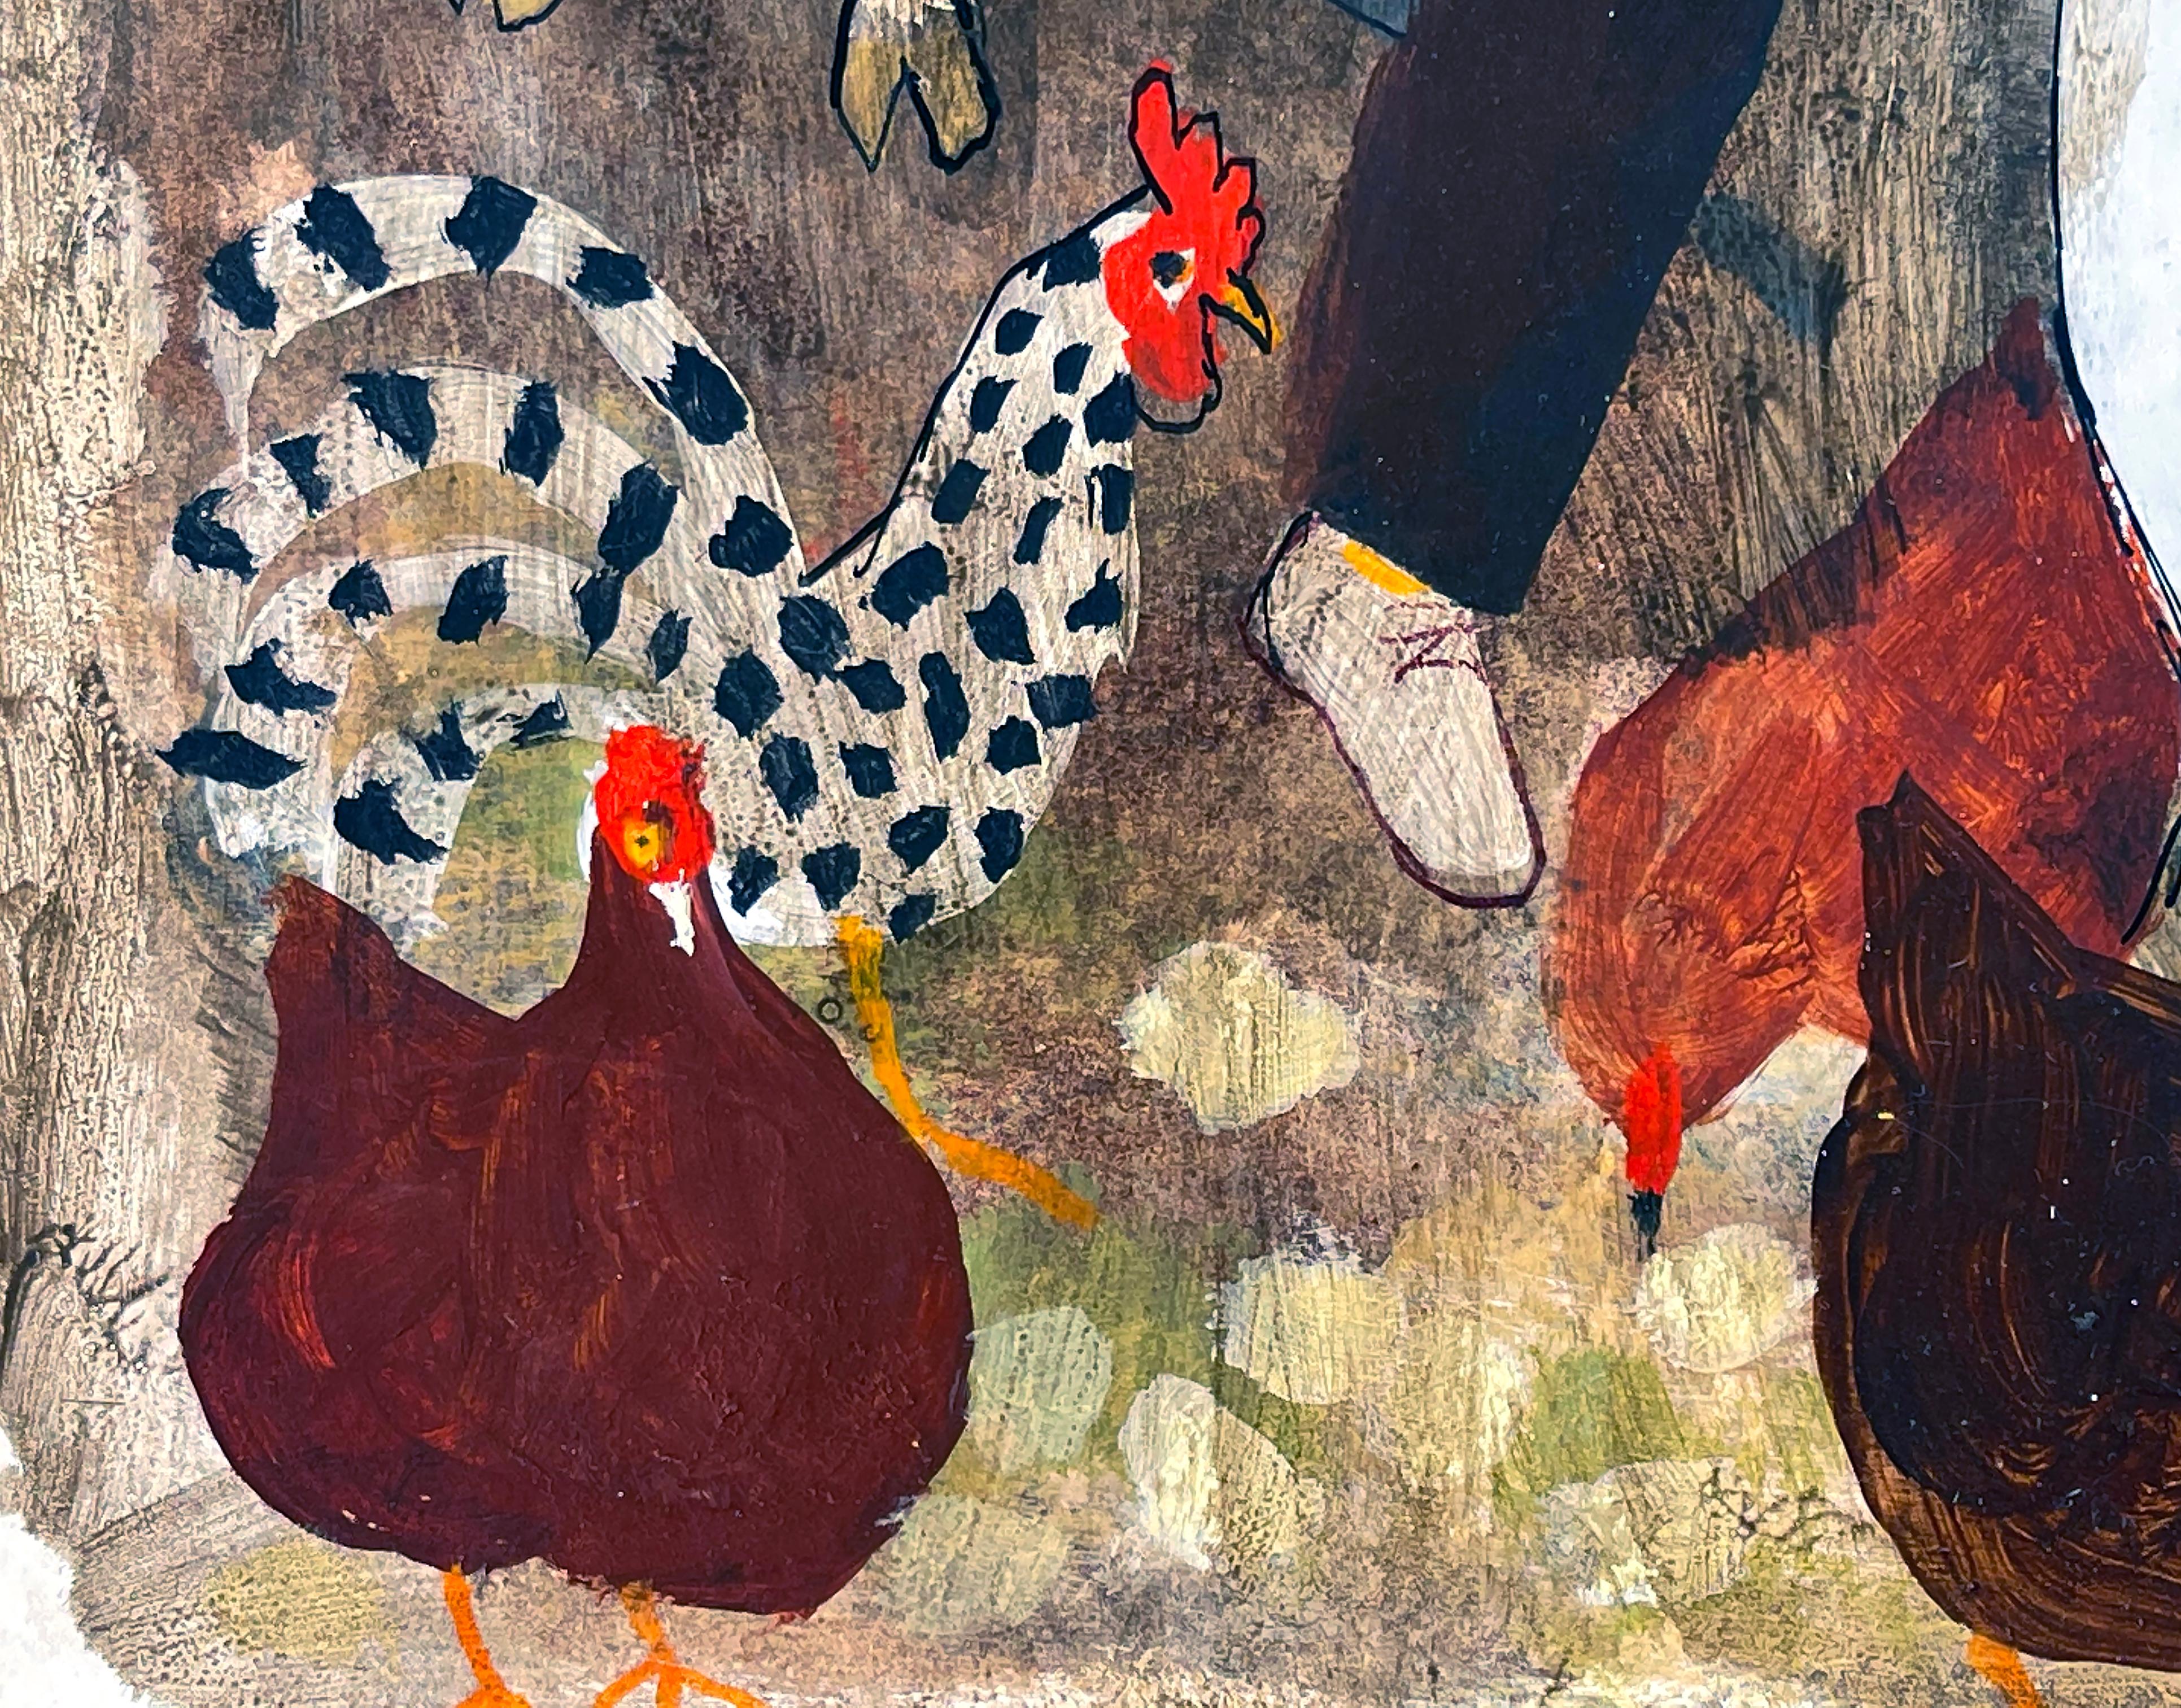 Duck à la ferme avec cheval, chèvre et poulets.  Illustration de livres pour enfants - Painting de ALICE and  MARTIN PROVENSEN